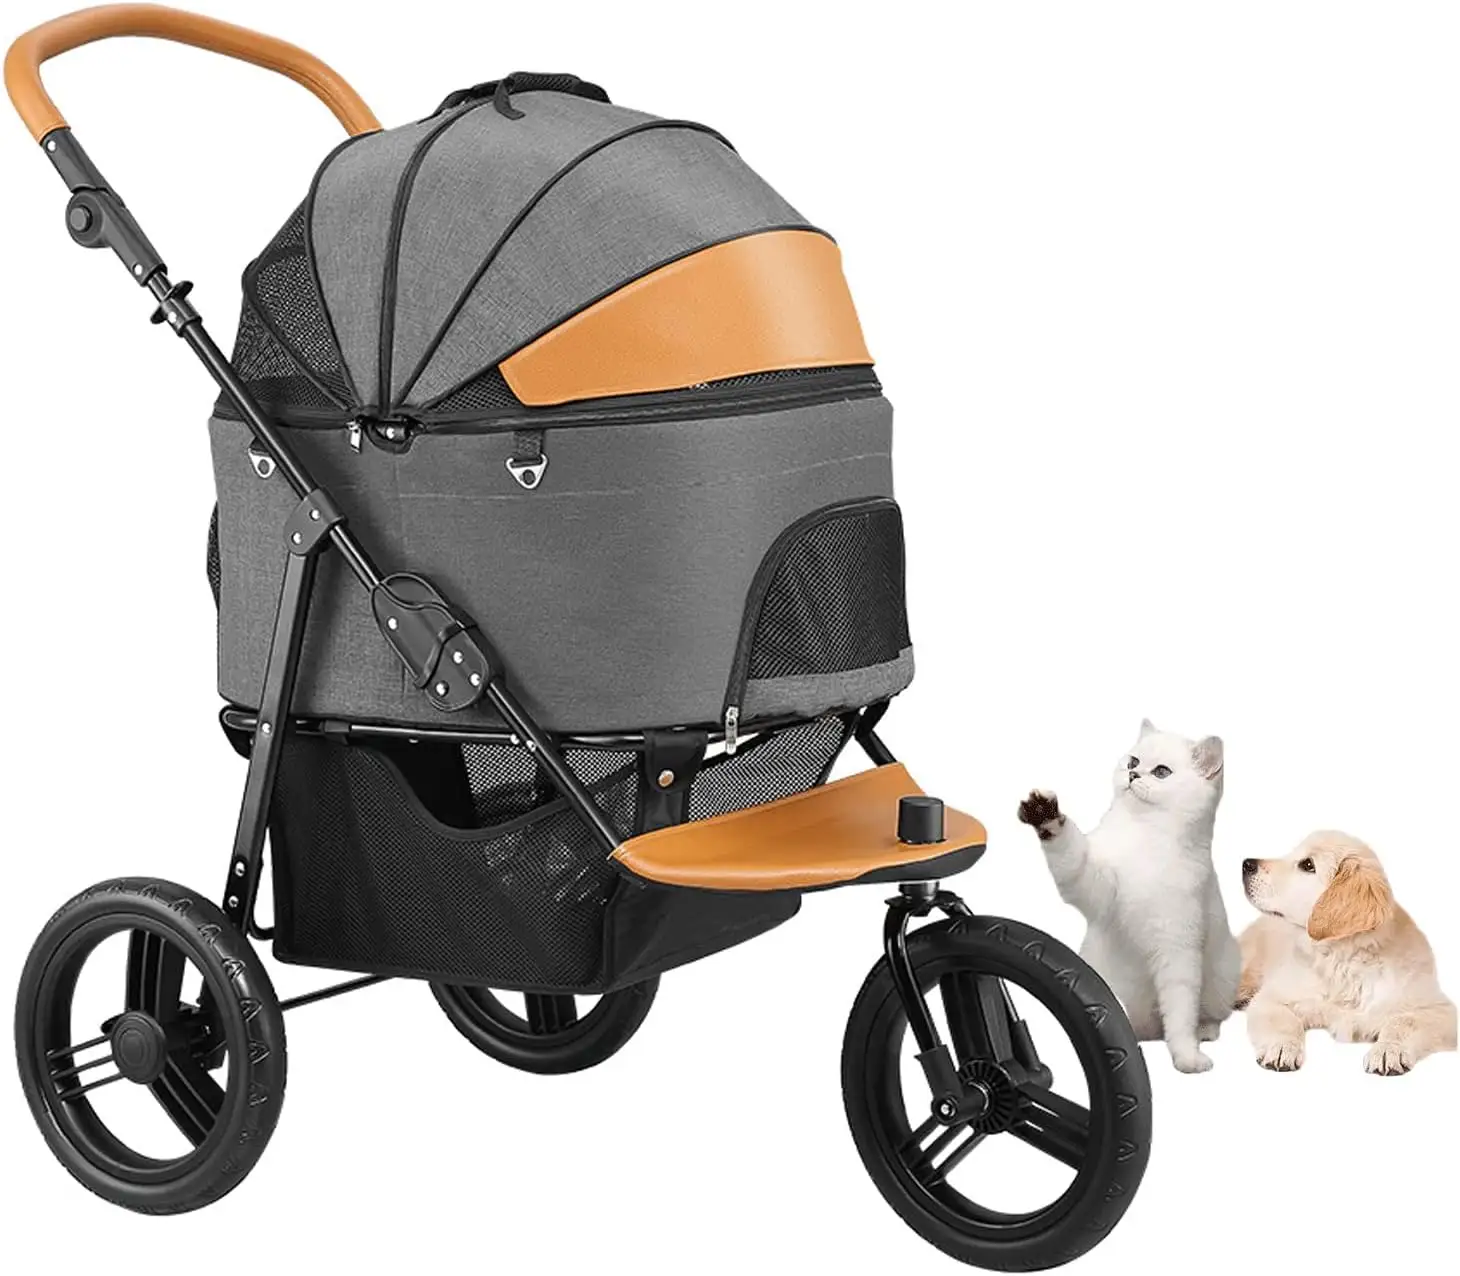 Luxus 3-Rad-Kinderwagen mit niedrigem MOQ für Katzen und Hunde Abnehmbarer Jogging-Kinderwagen für mittelgroße Hunde Tragbarer Haustier wagen